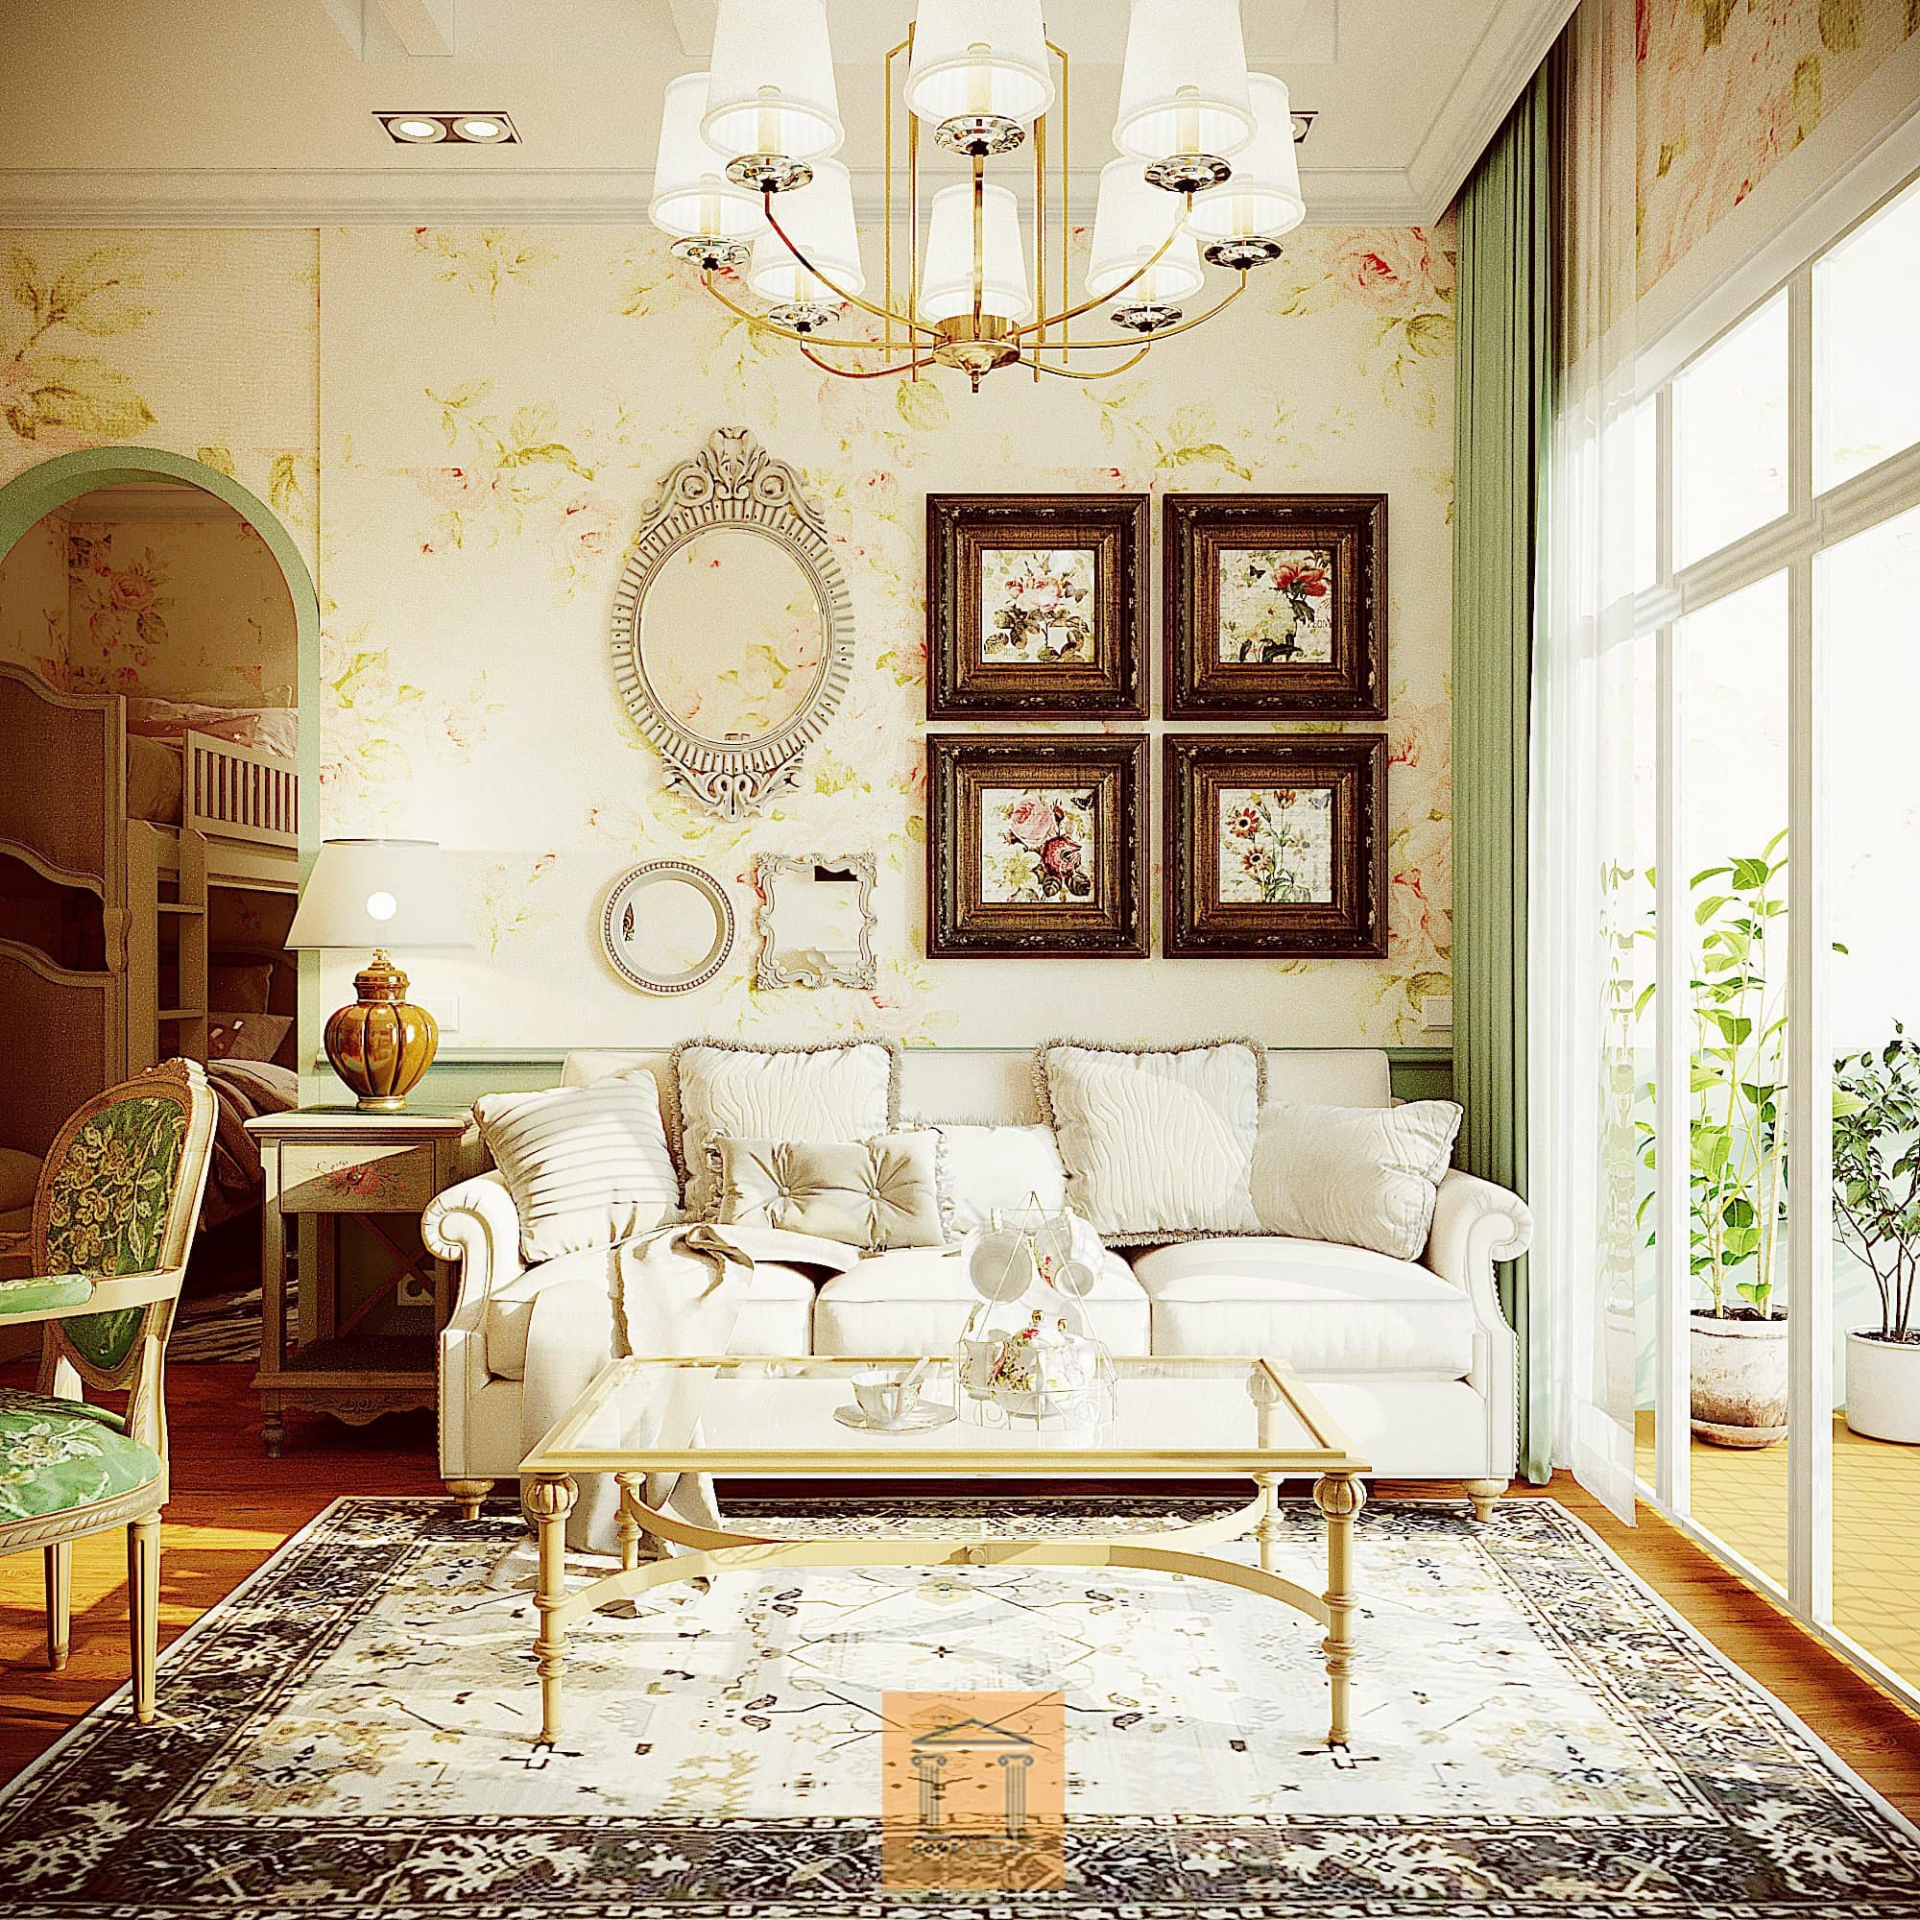 Những món nội thất với hoa văn uốn mại hay như bộ sofa với tay uốn cong và đinh tán ở thân vừa mạnh mẽ, vừa thanh lịch.